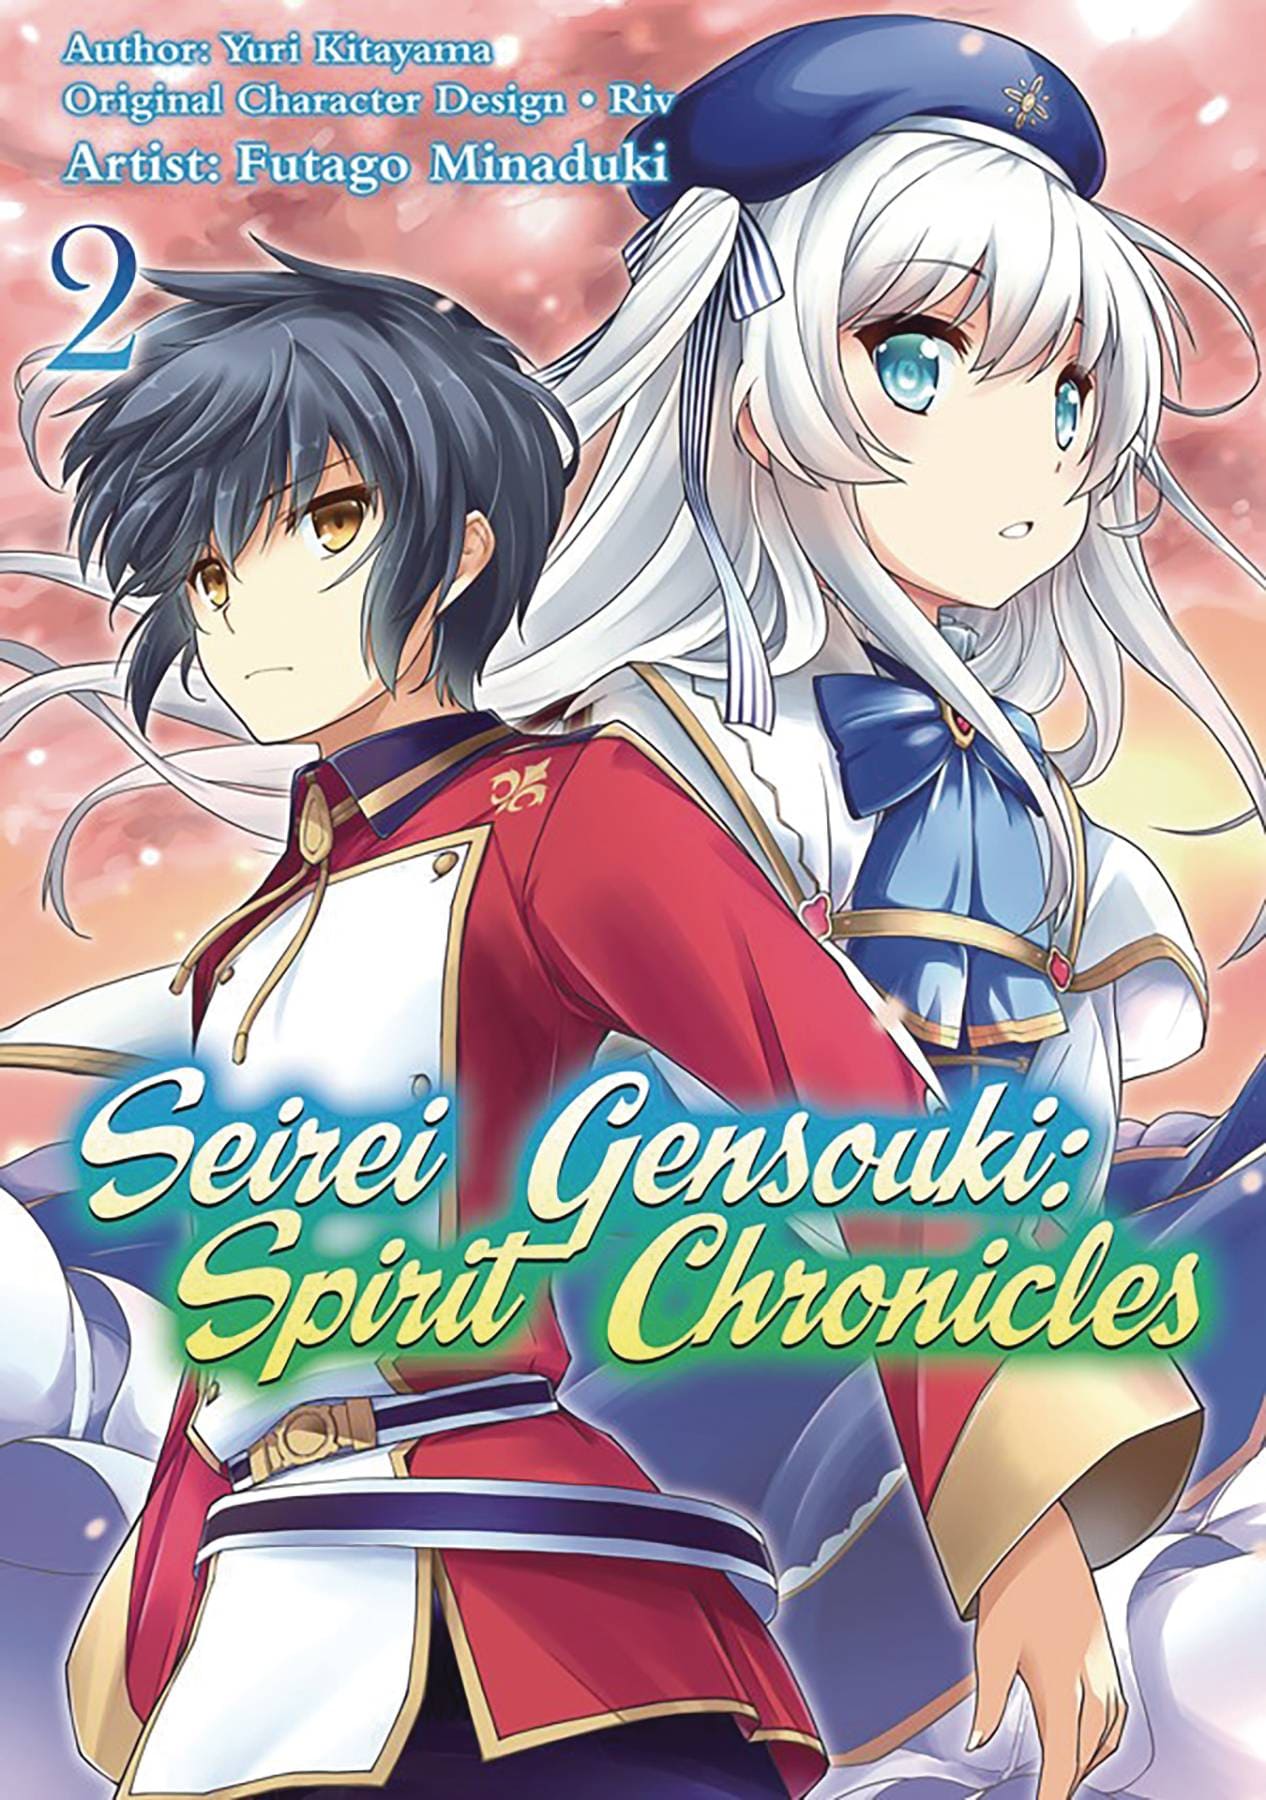 Seirei Gensouki: Spirit Chronicles - Opening